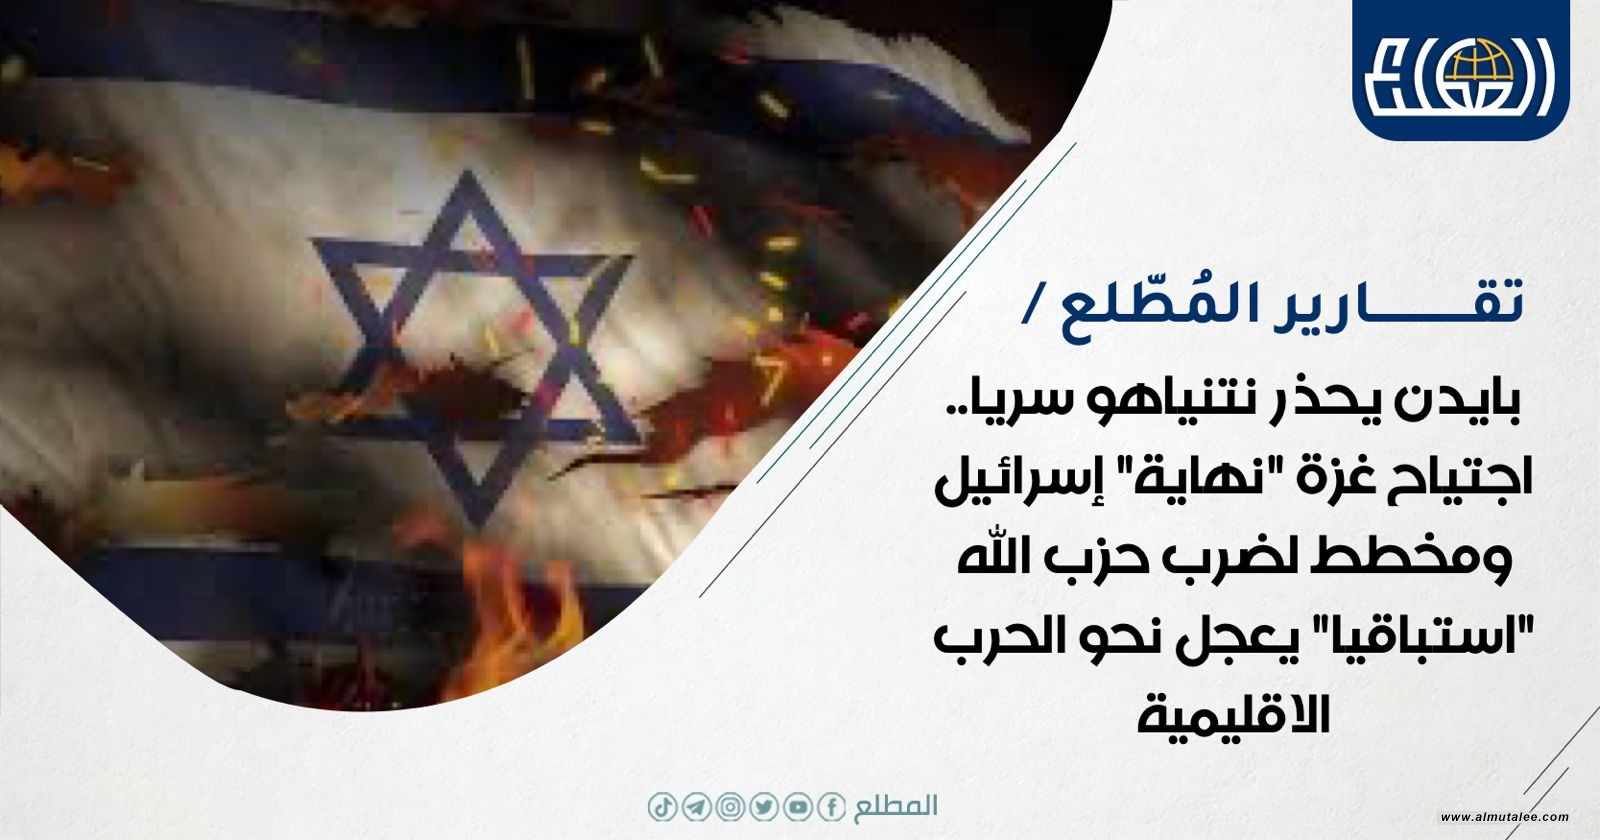 بايدن يحذر نتنياهو سريا.. اجتياح غزة "نهاية" إسرائيل ومخطط لضرب حزب الله "استباقيا" يعجل نحو الحرب الاقليمية